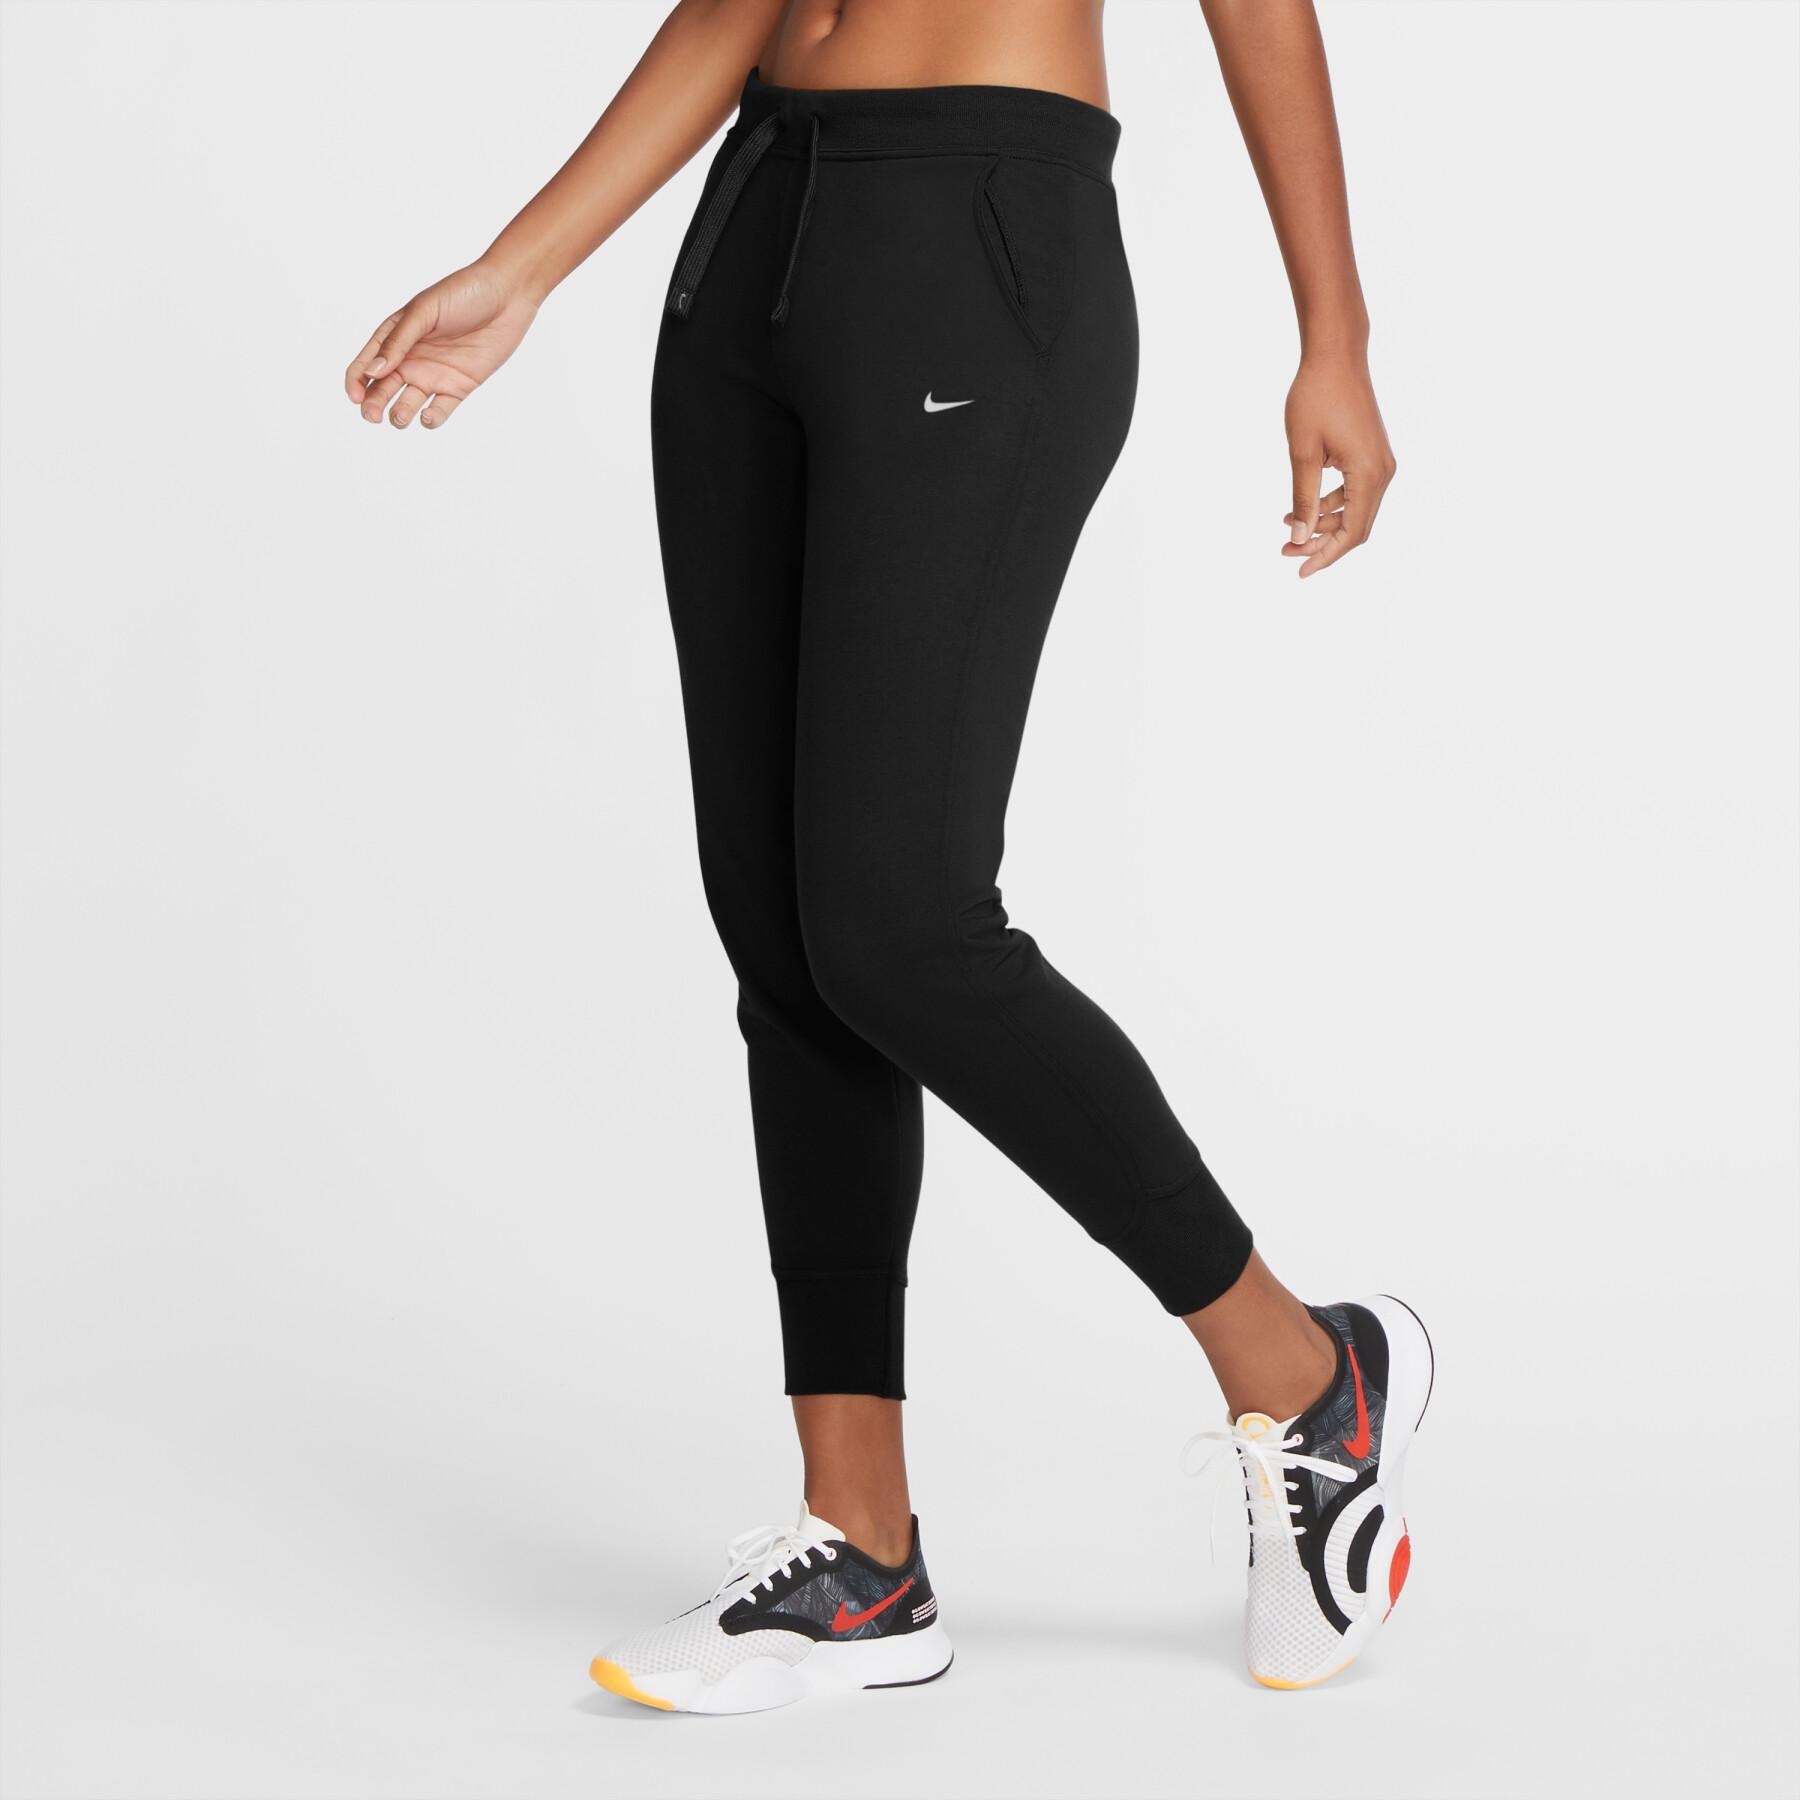 Fato de corrida feminino Nike dri-fit get fit